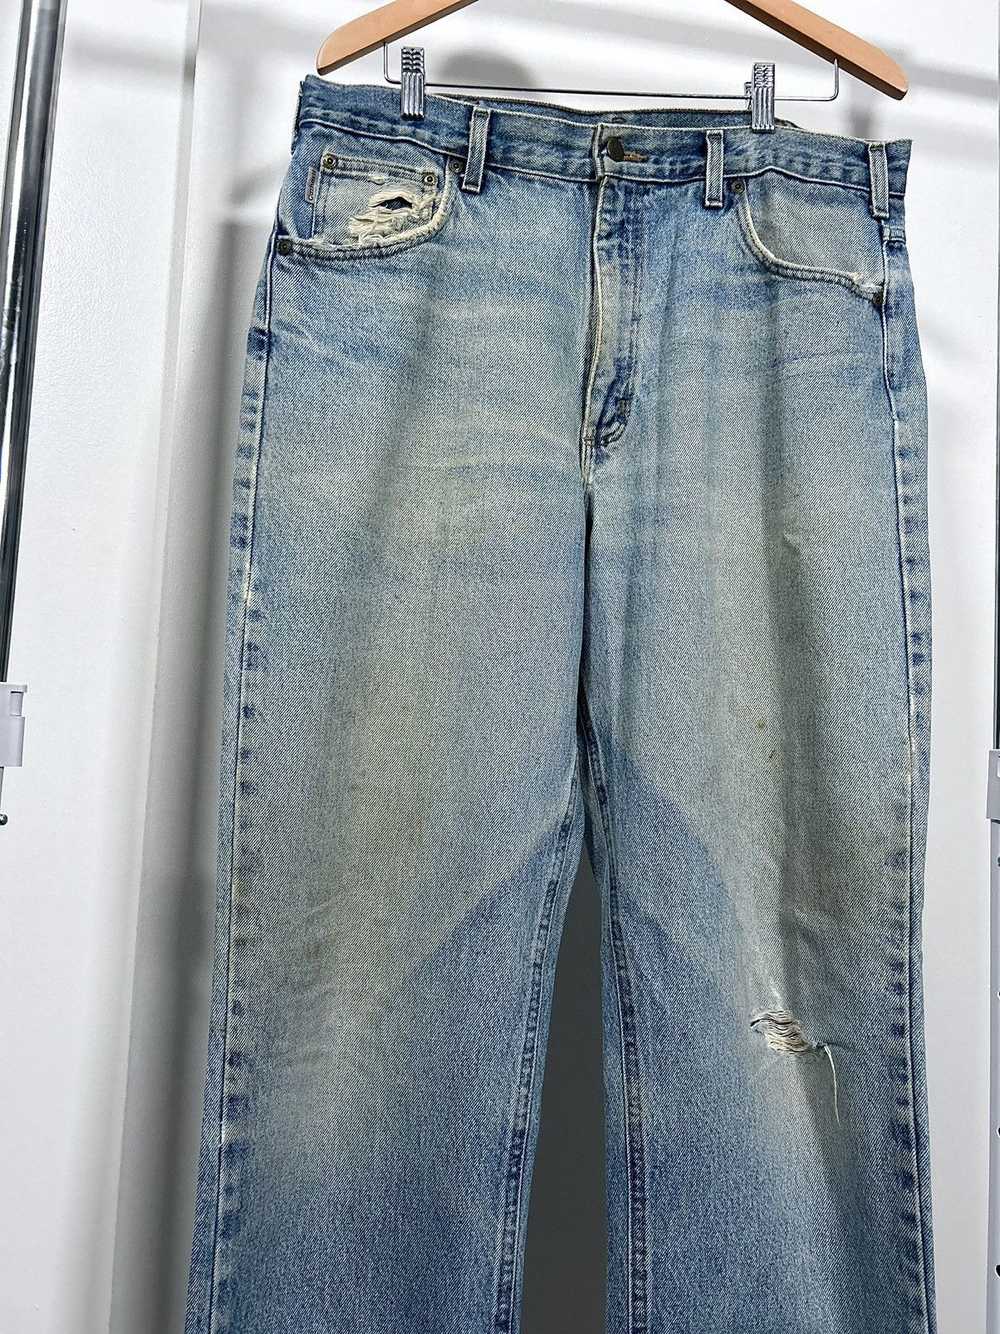 Carhartt × Vintage Vintage Thrashed Carhartt Jeans - image 2